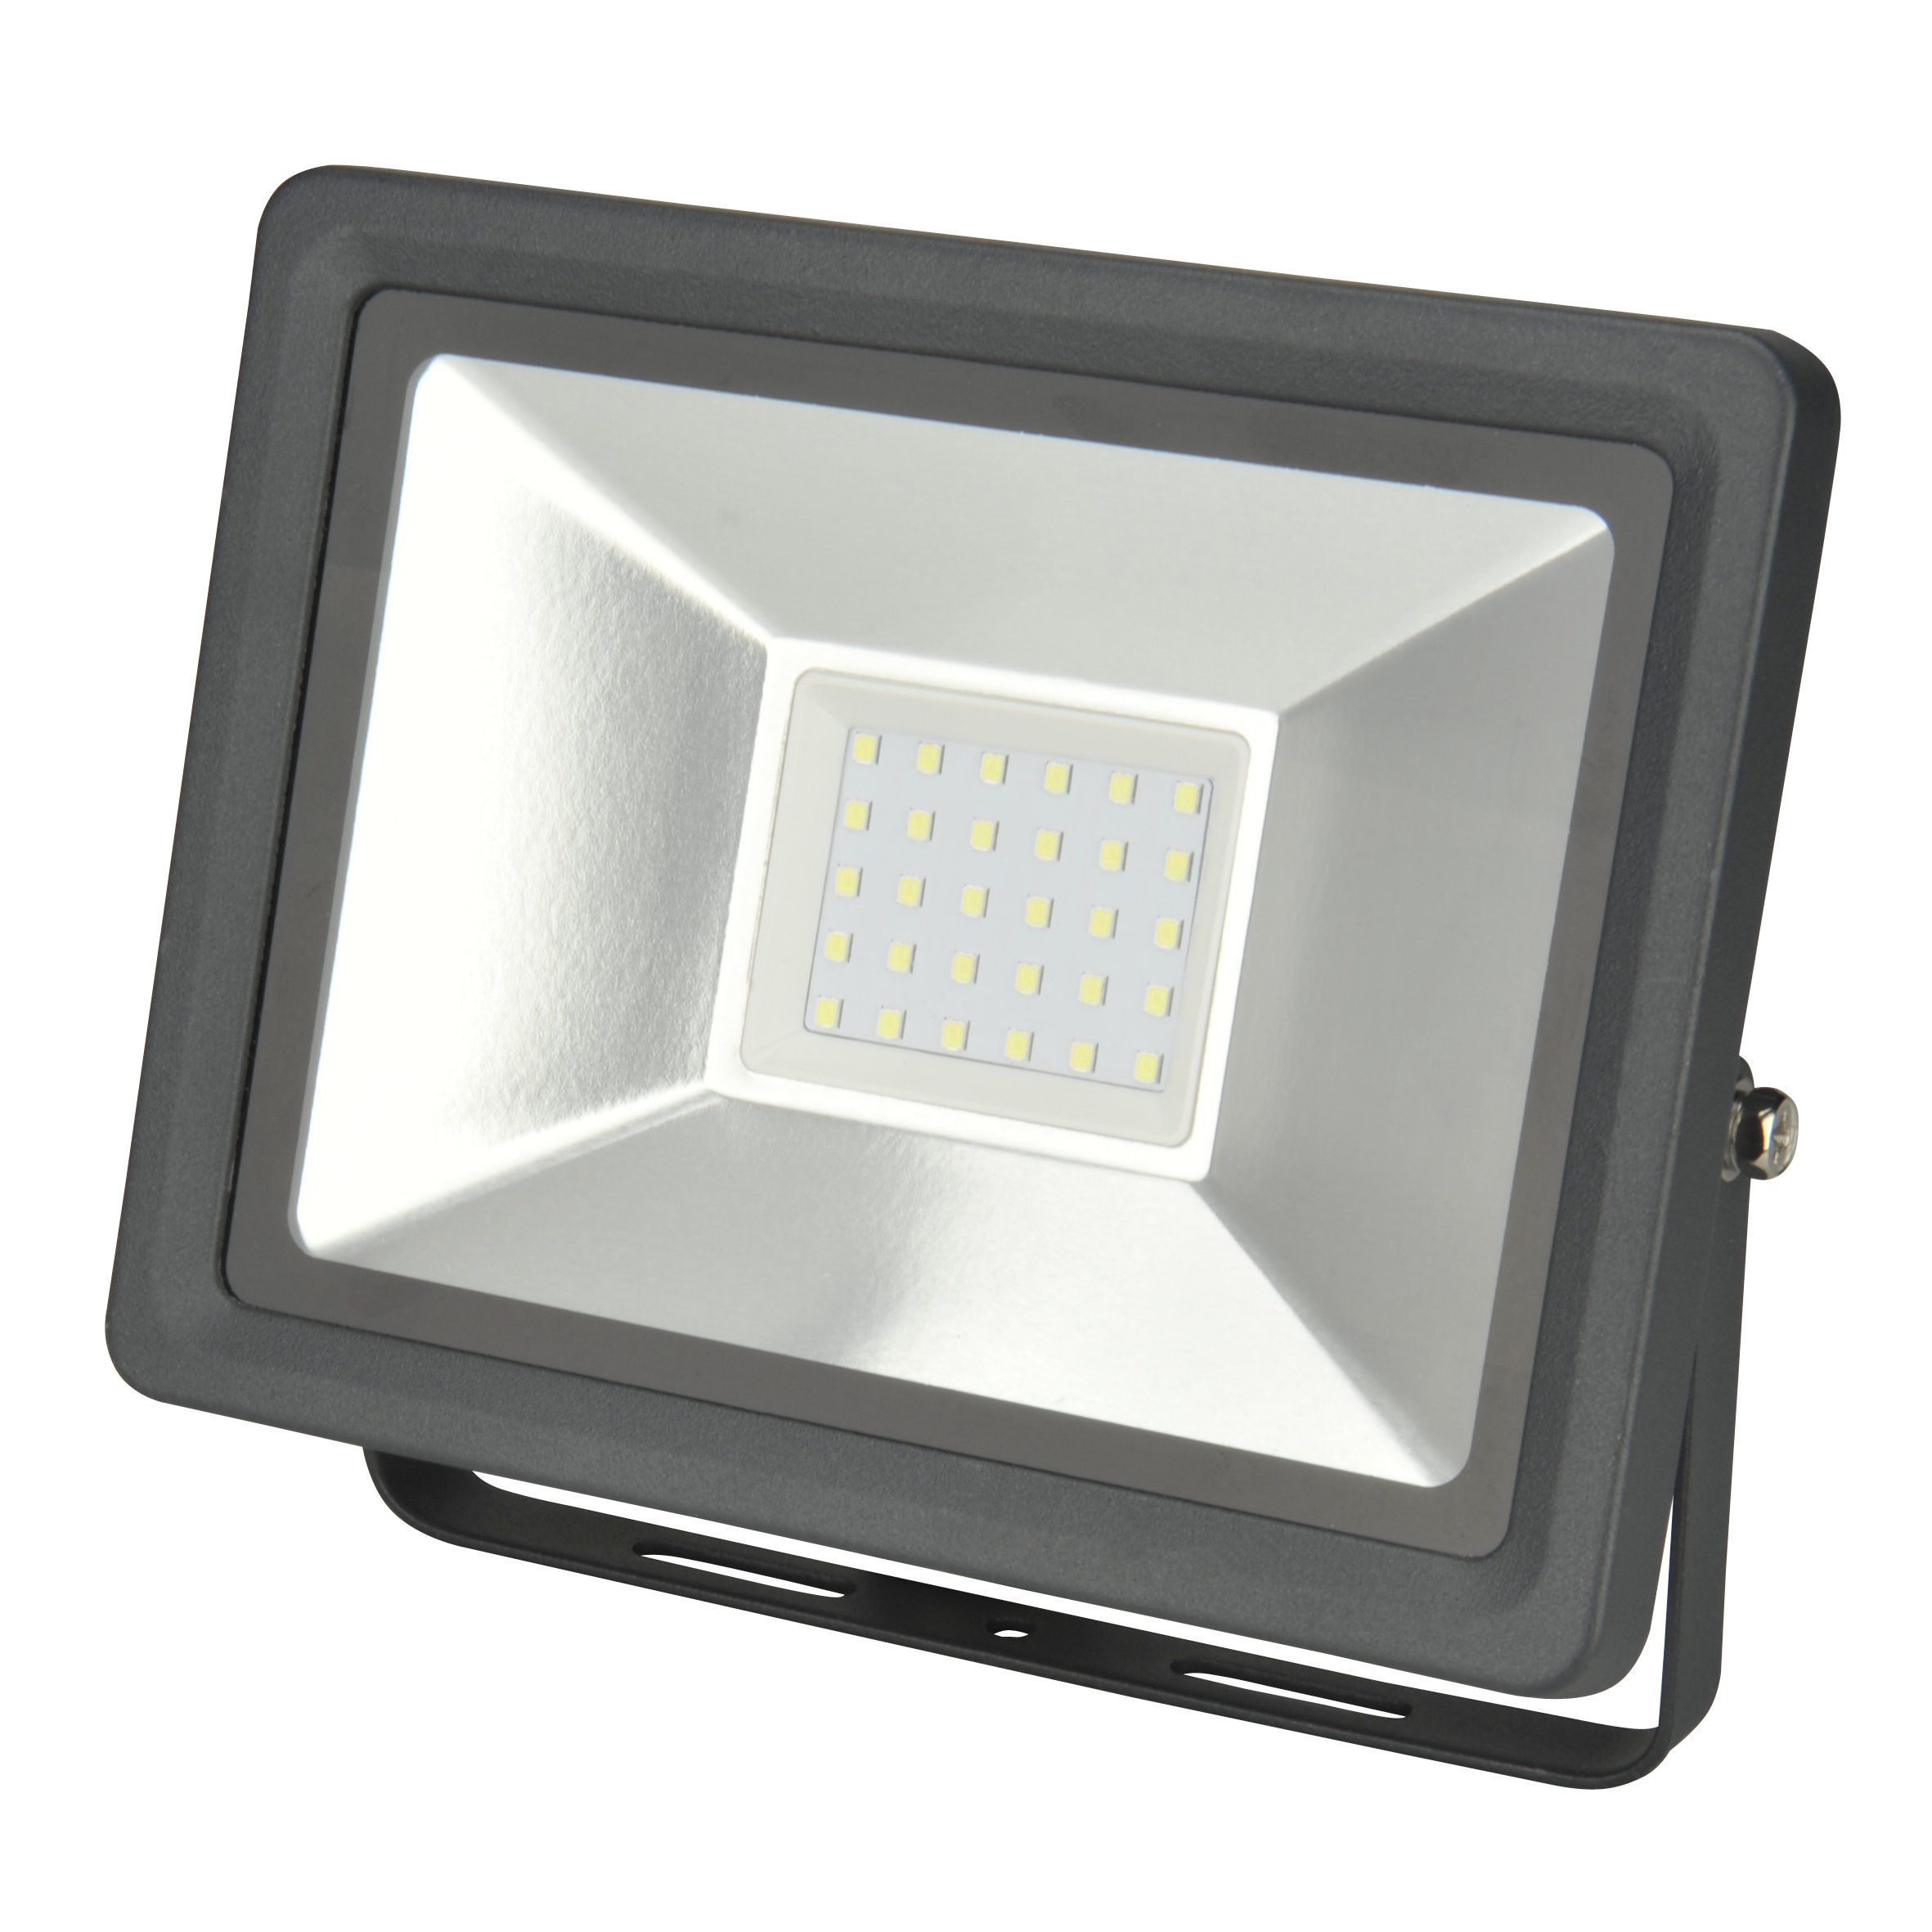 uniTEC LED Wand-Strahler 30 W, 6500 K, 2400 lm, IP 65